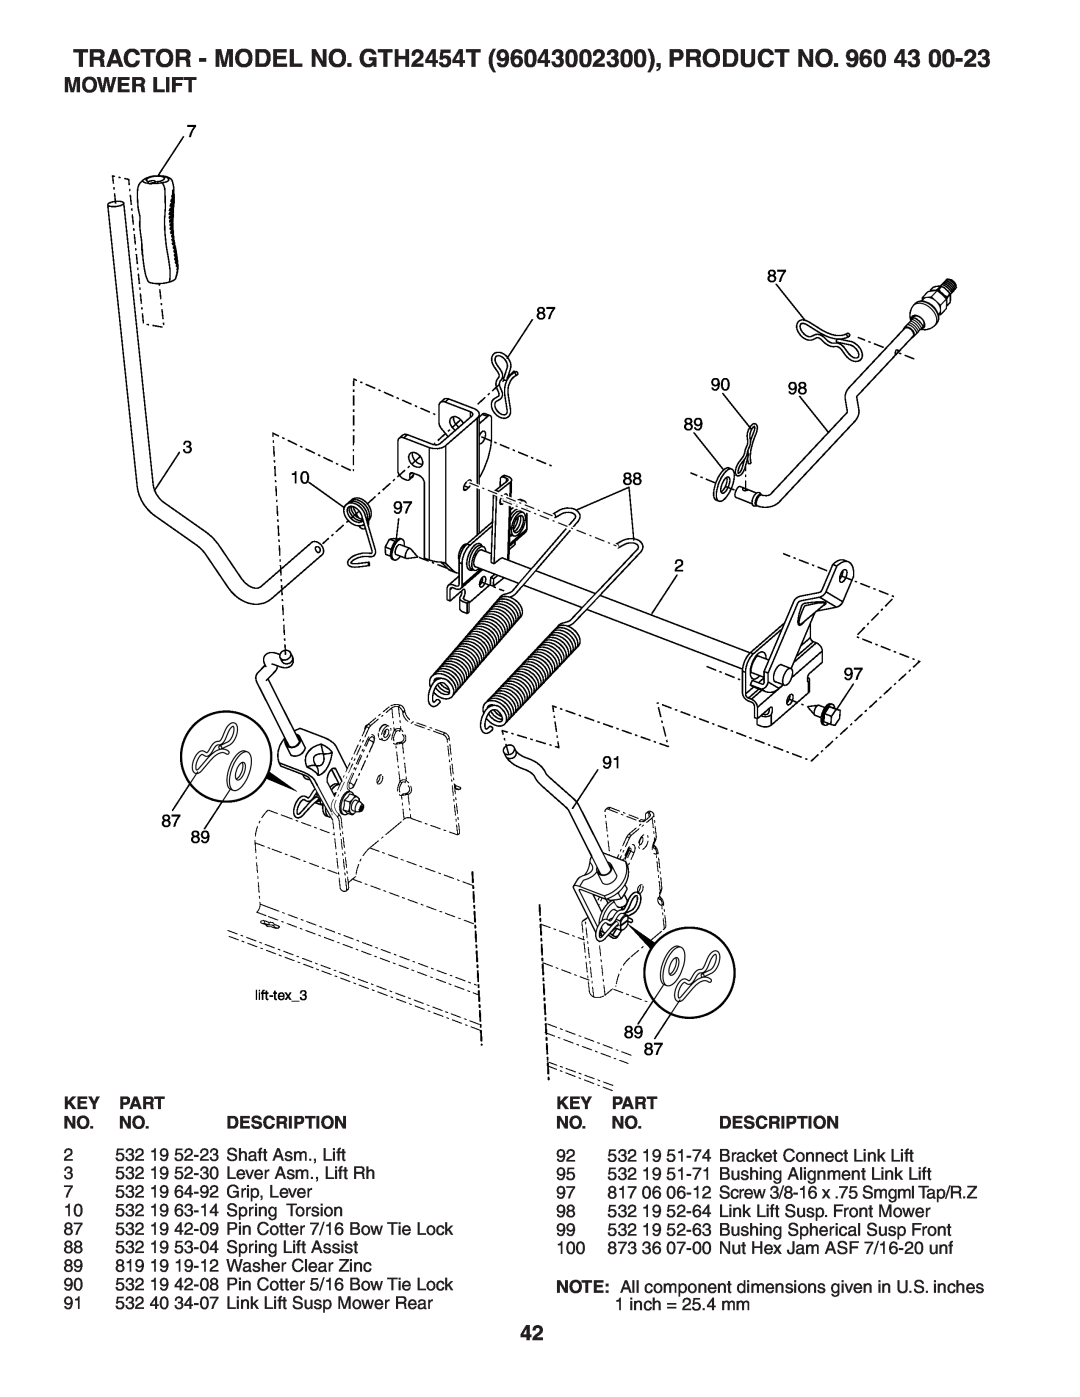 Husqvarna owner manual Mower Lift, TRACTOR - MODEL NO. GTH2454T 96043002300, PRODUCT NO, lift-tex3 